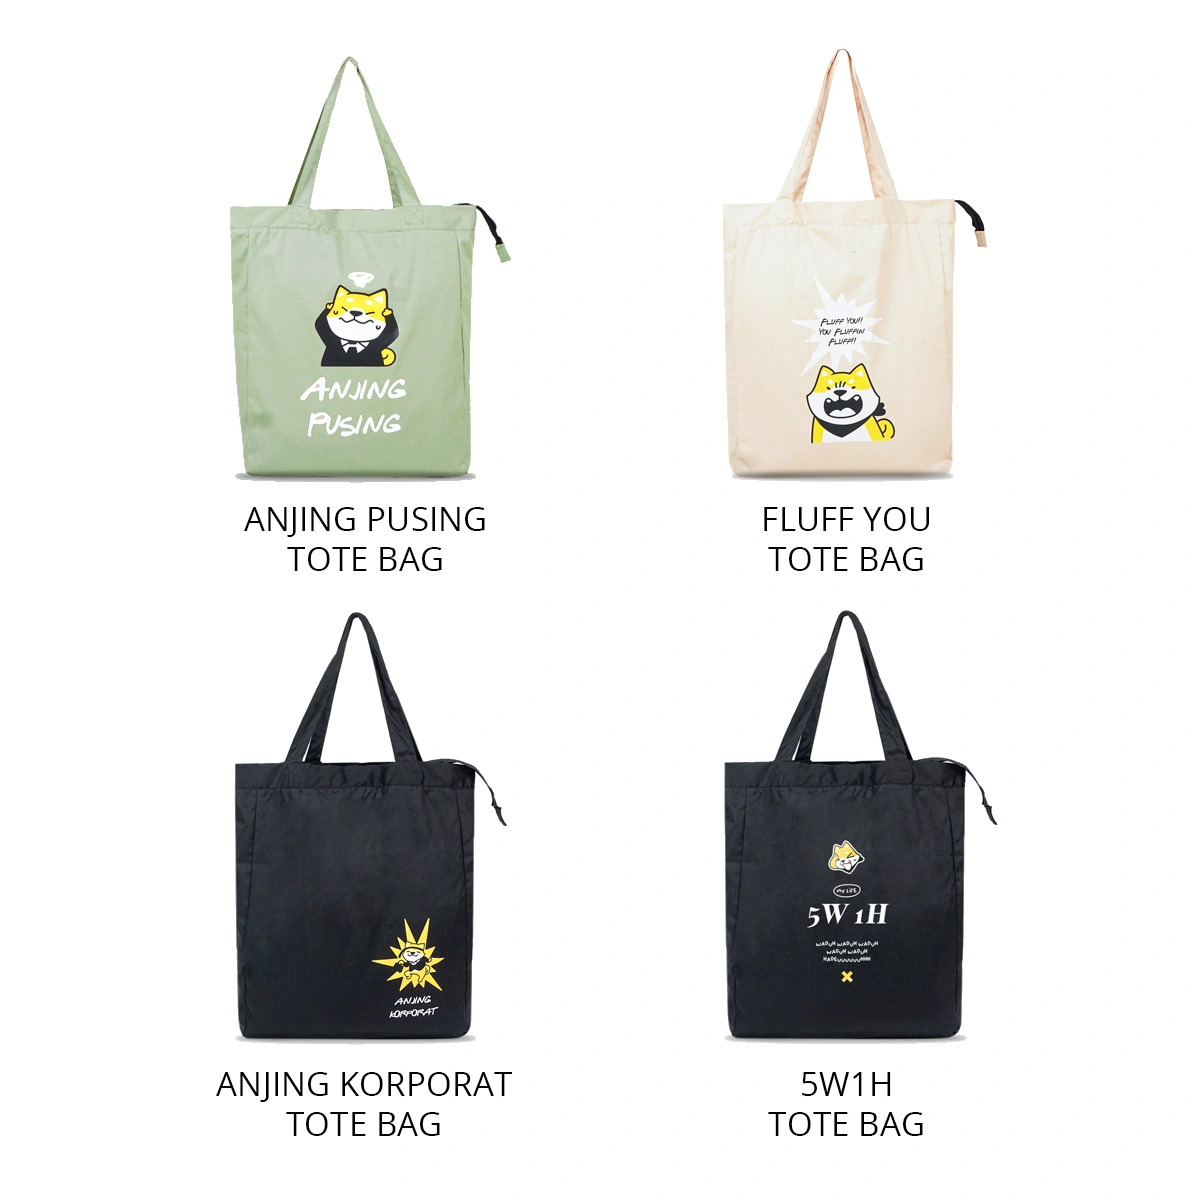 Totebag Serbaguna Dengan Desain Unik Dan Personal, Menggantikan Tas Plastik Dan Melambangkan Brand Tertentu.